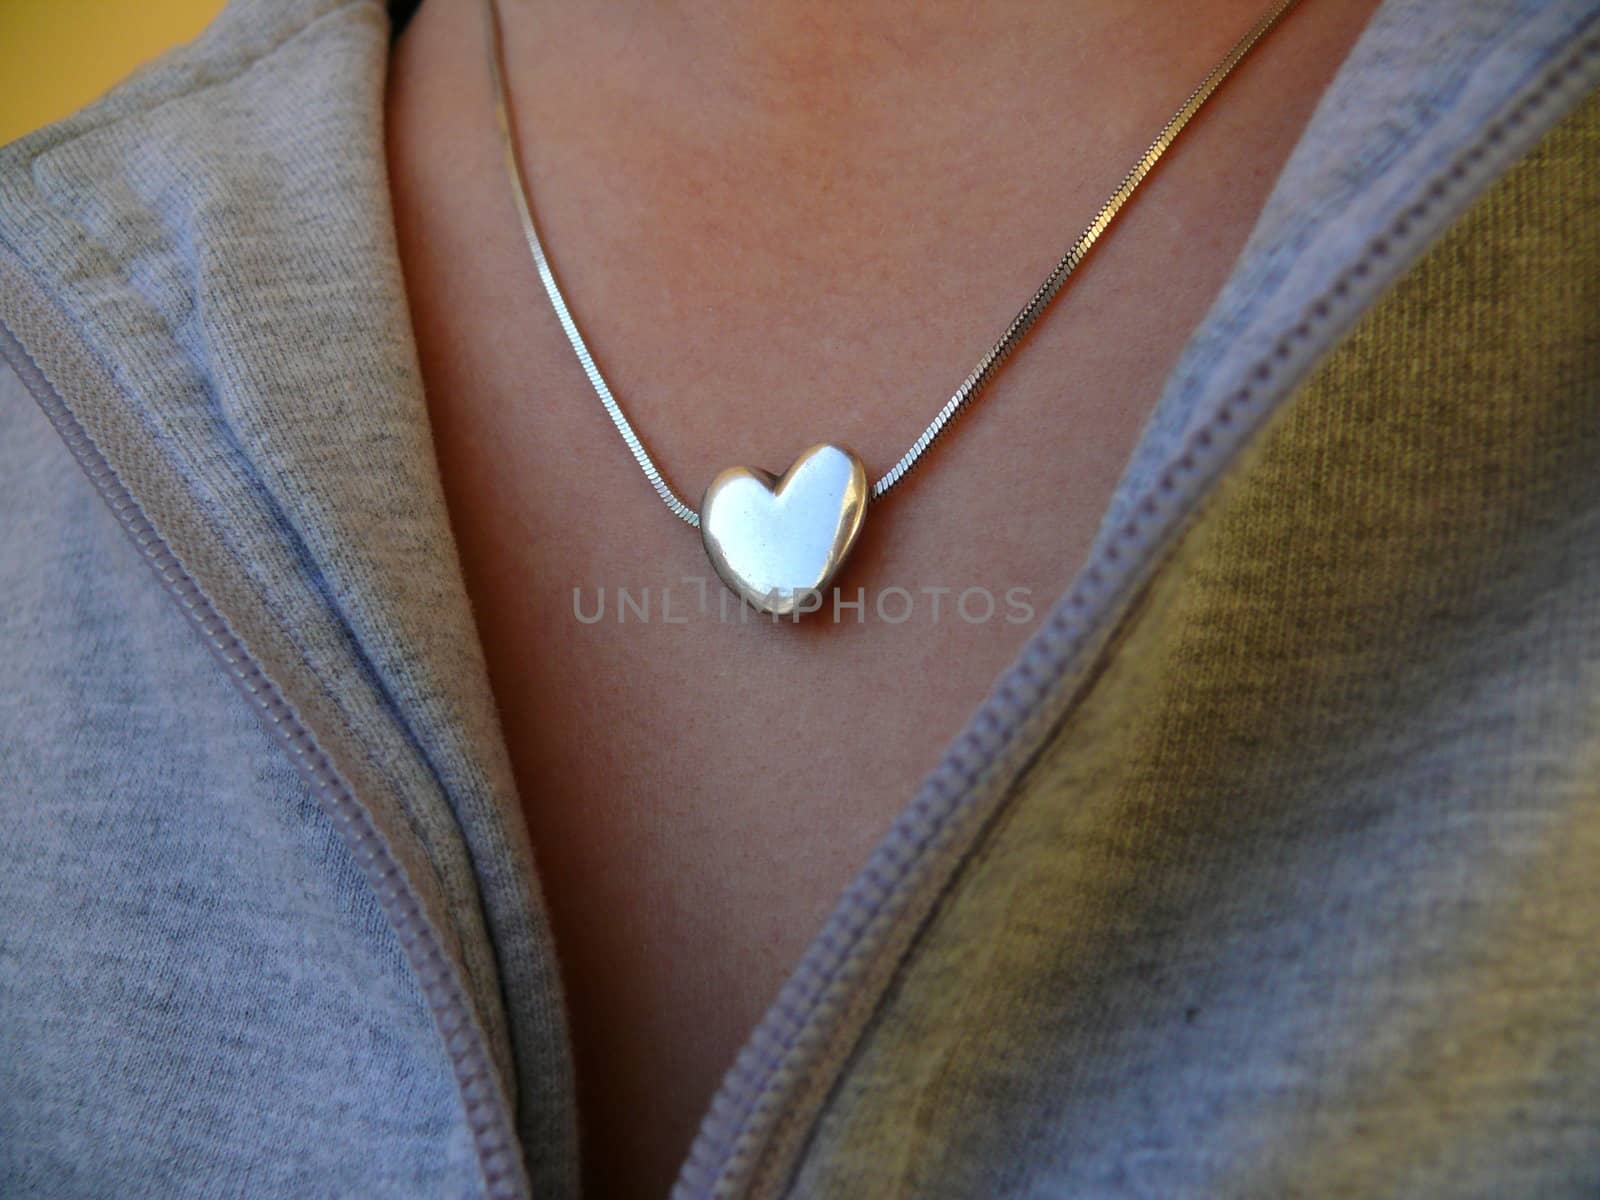 heart-shaped locket